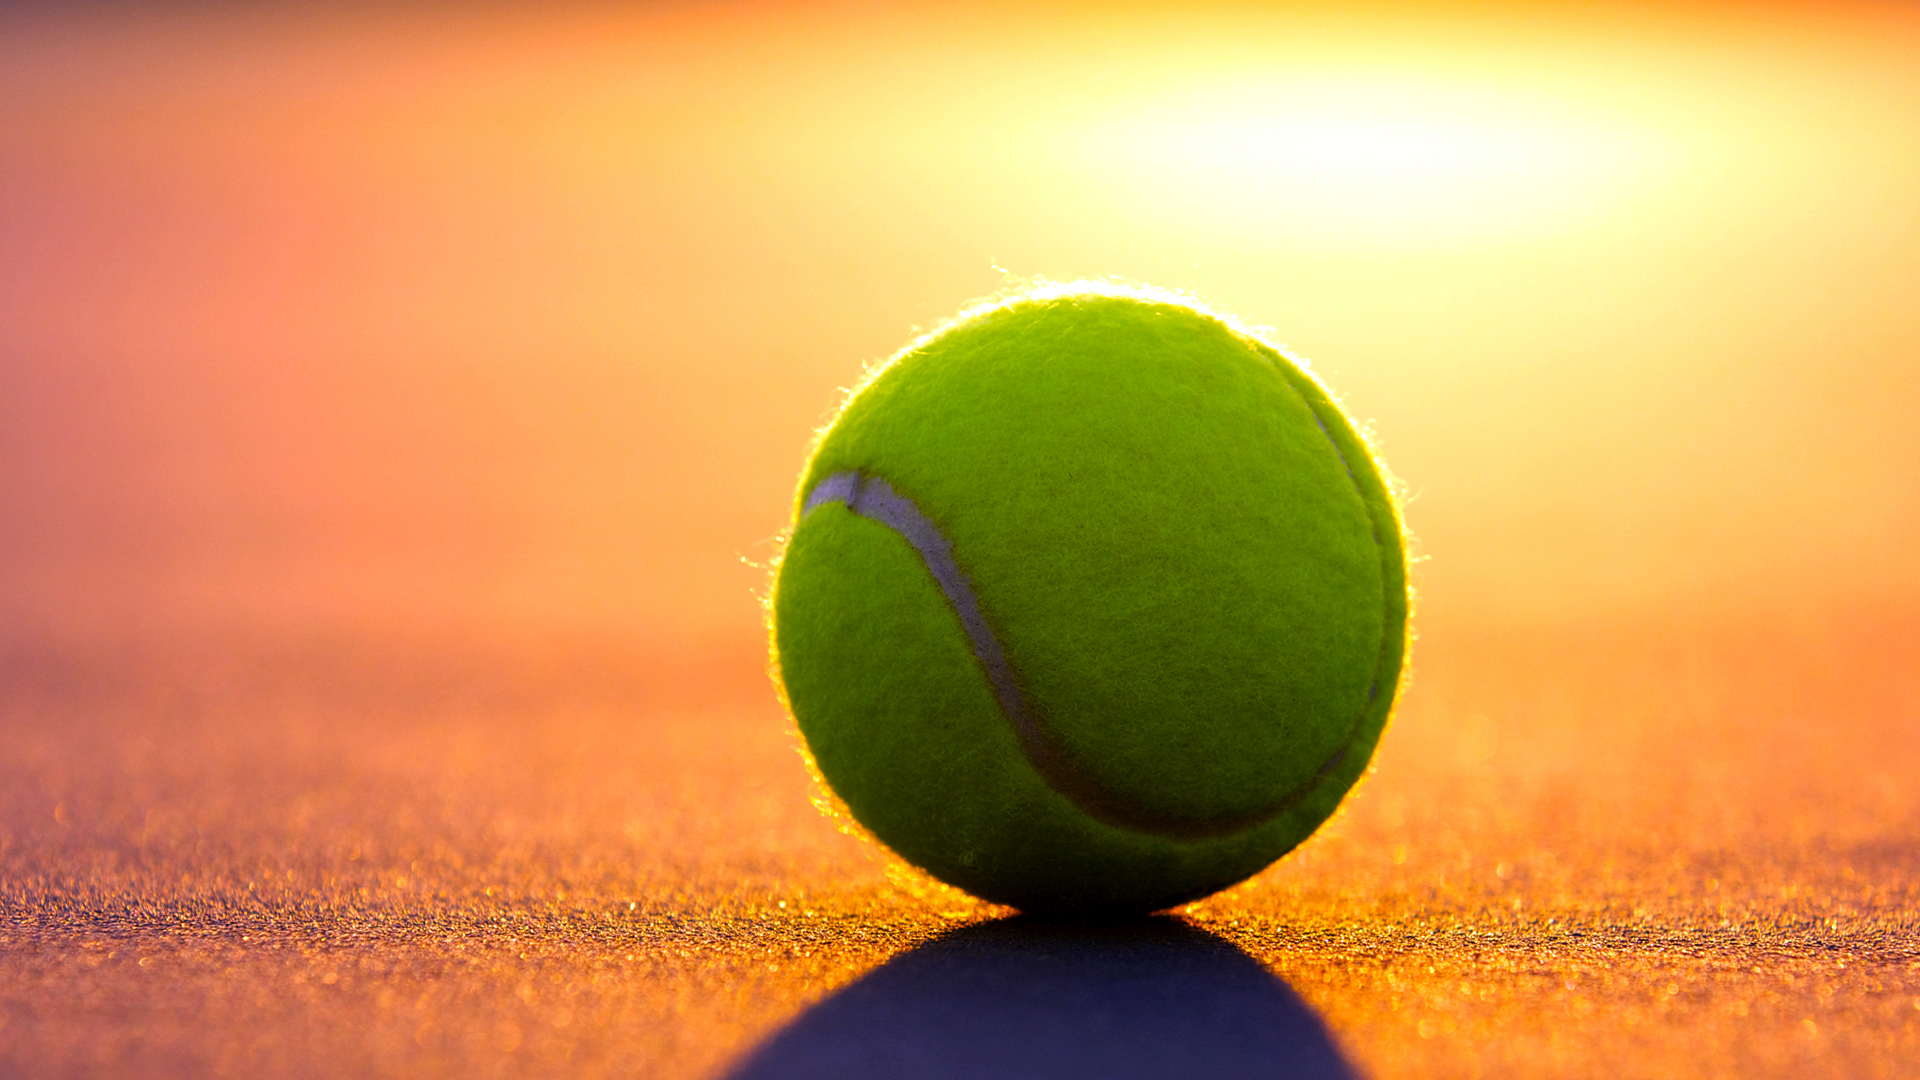 tenis 바탕 화면,테니스,테니스 공,화려 함,햇빛,라켓 스포츠